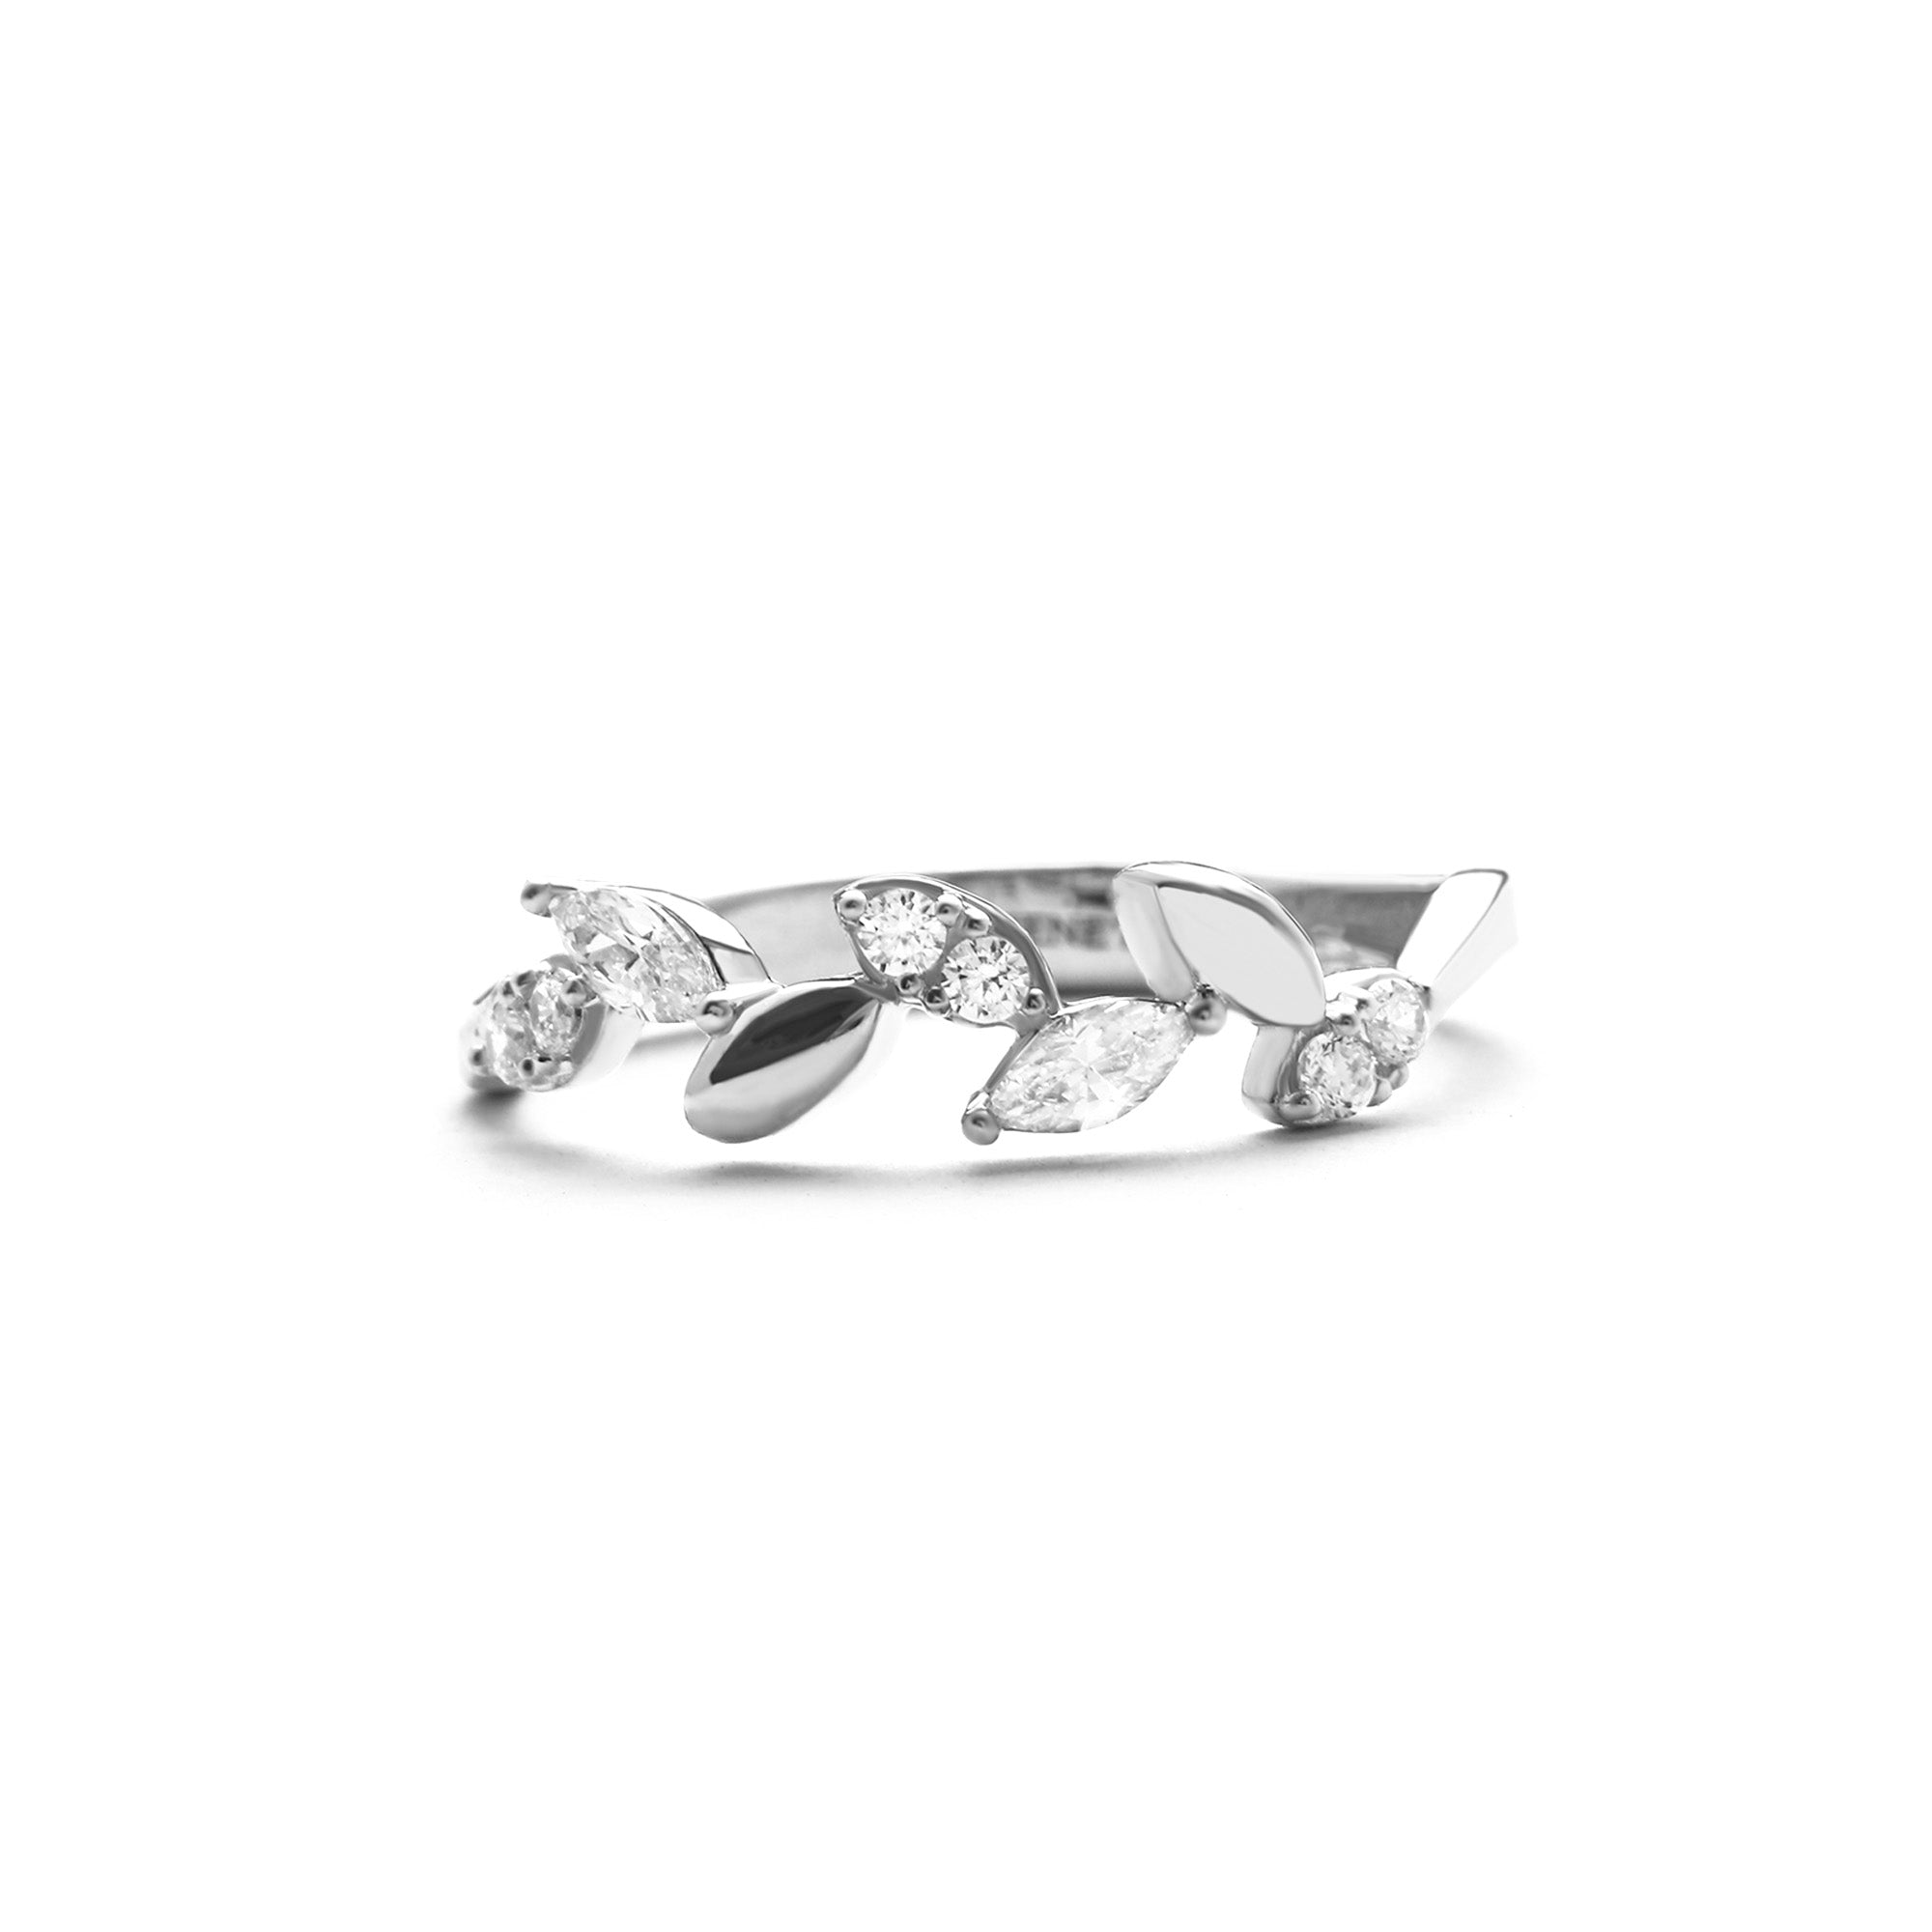 Yezi Rings 01 - Juene Jewelry